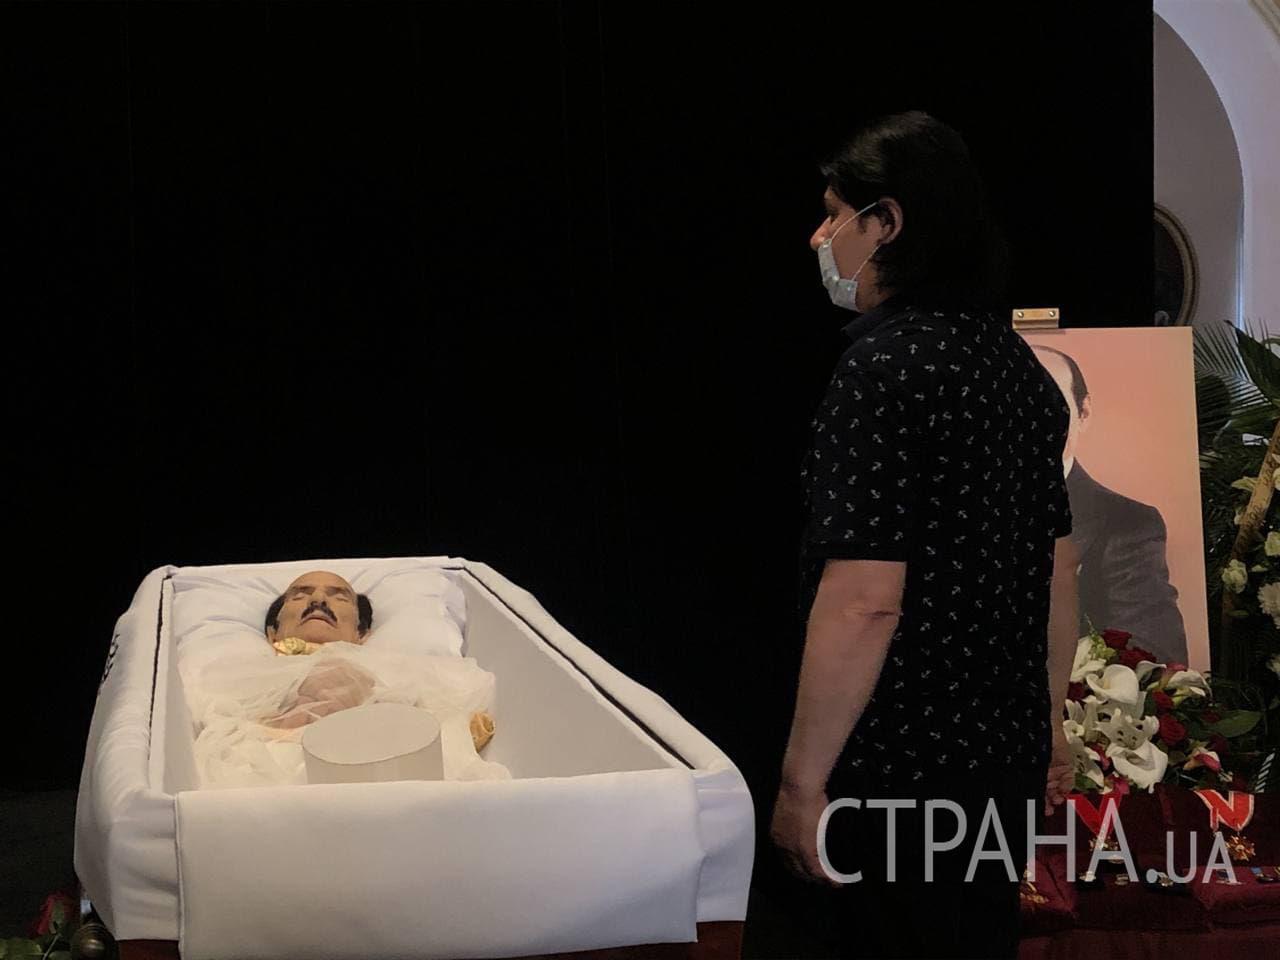 Павел Зибров н похоронах Чапкиса